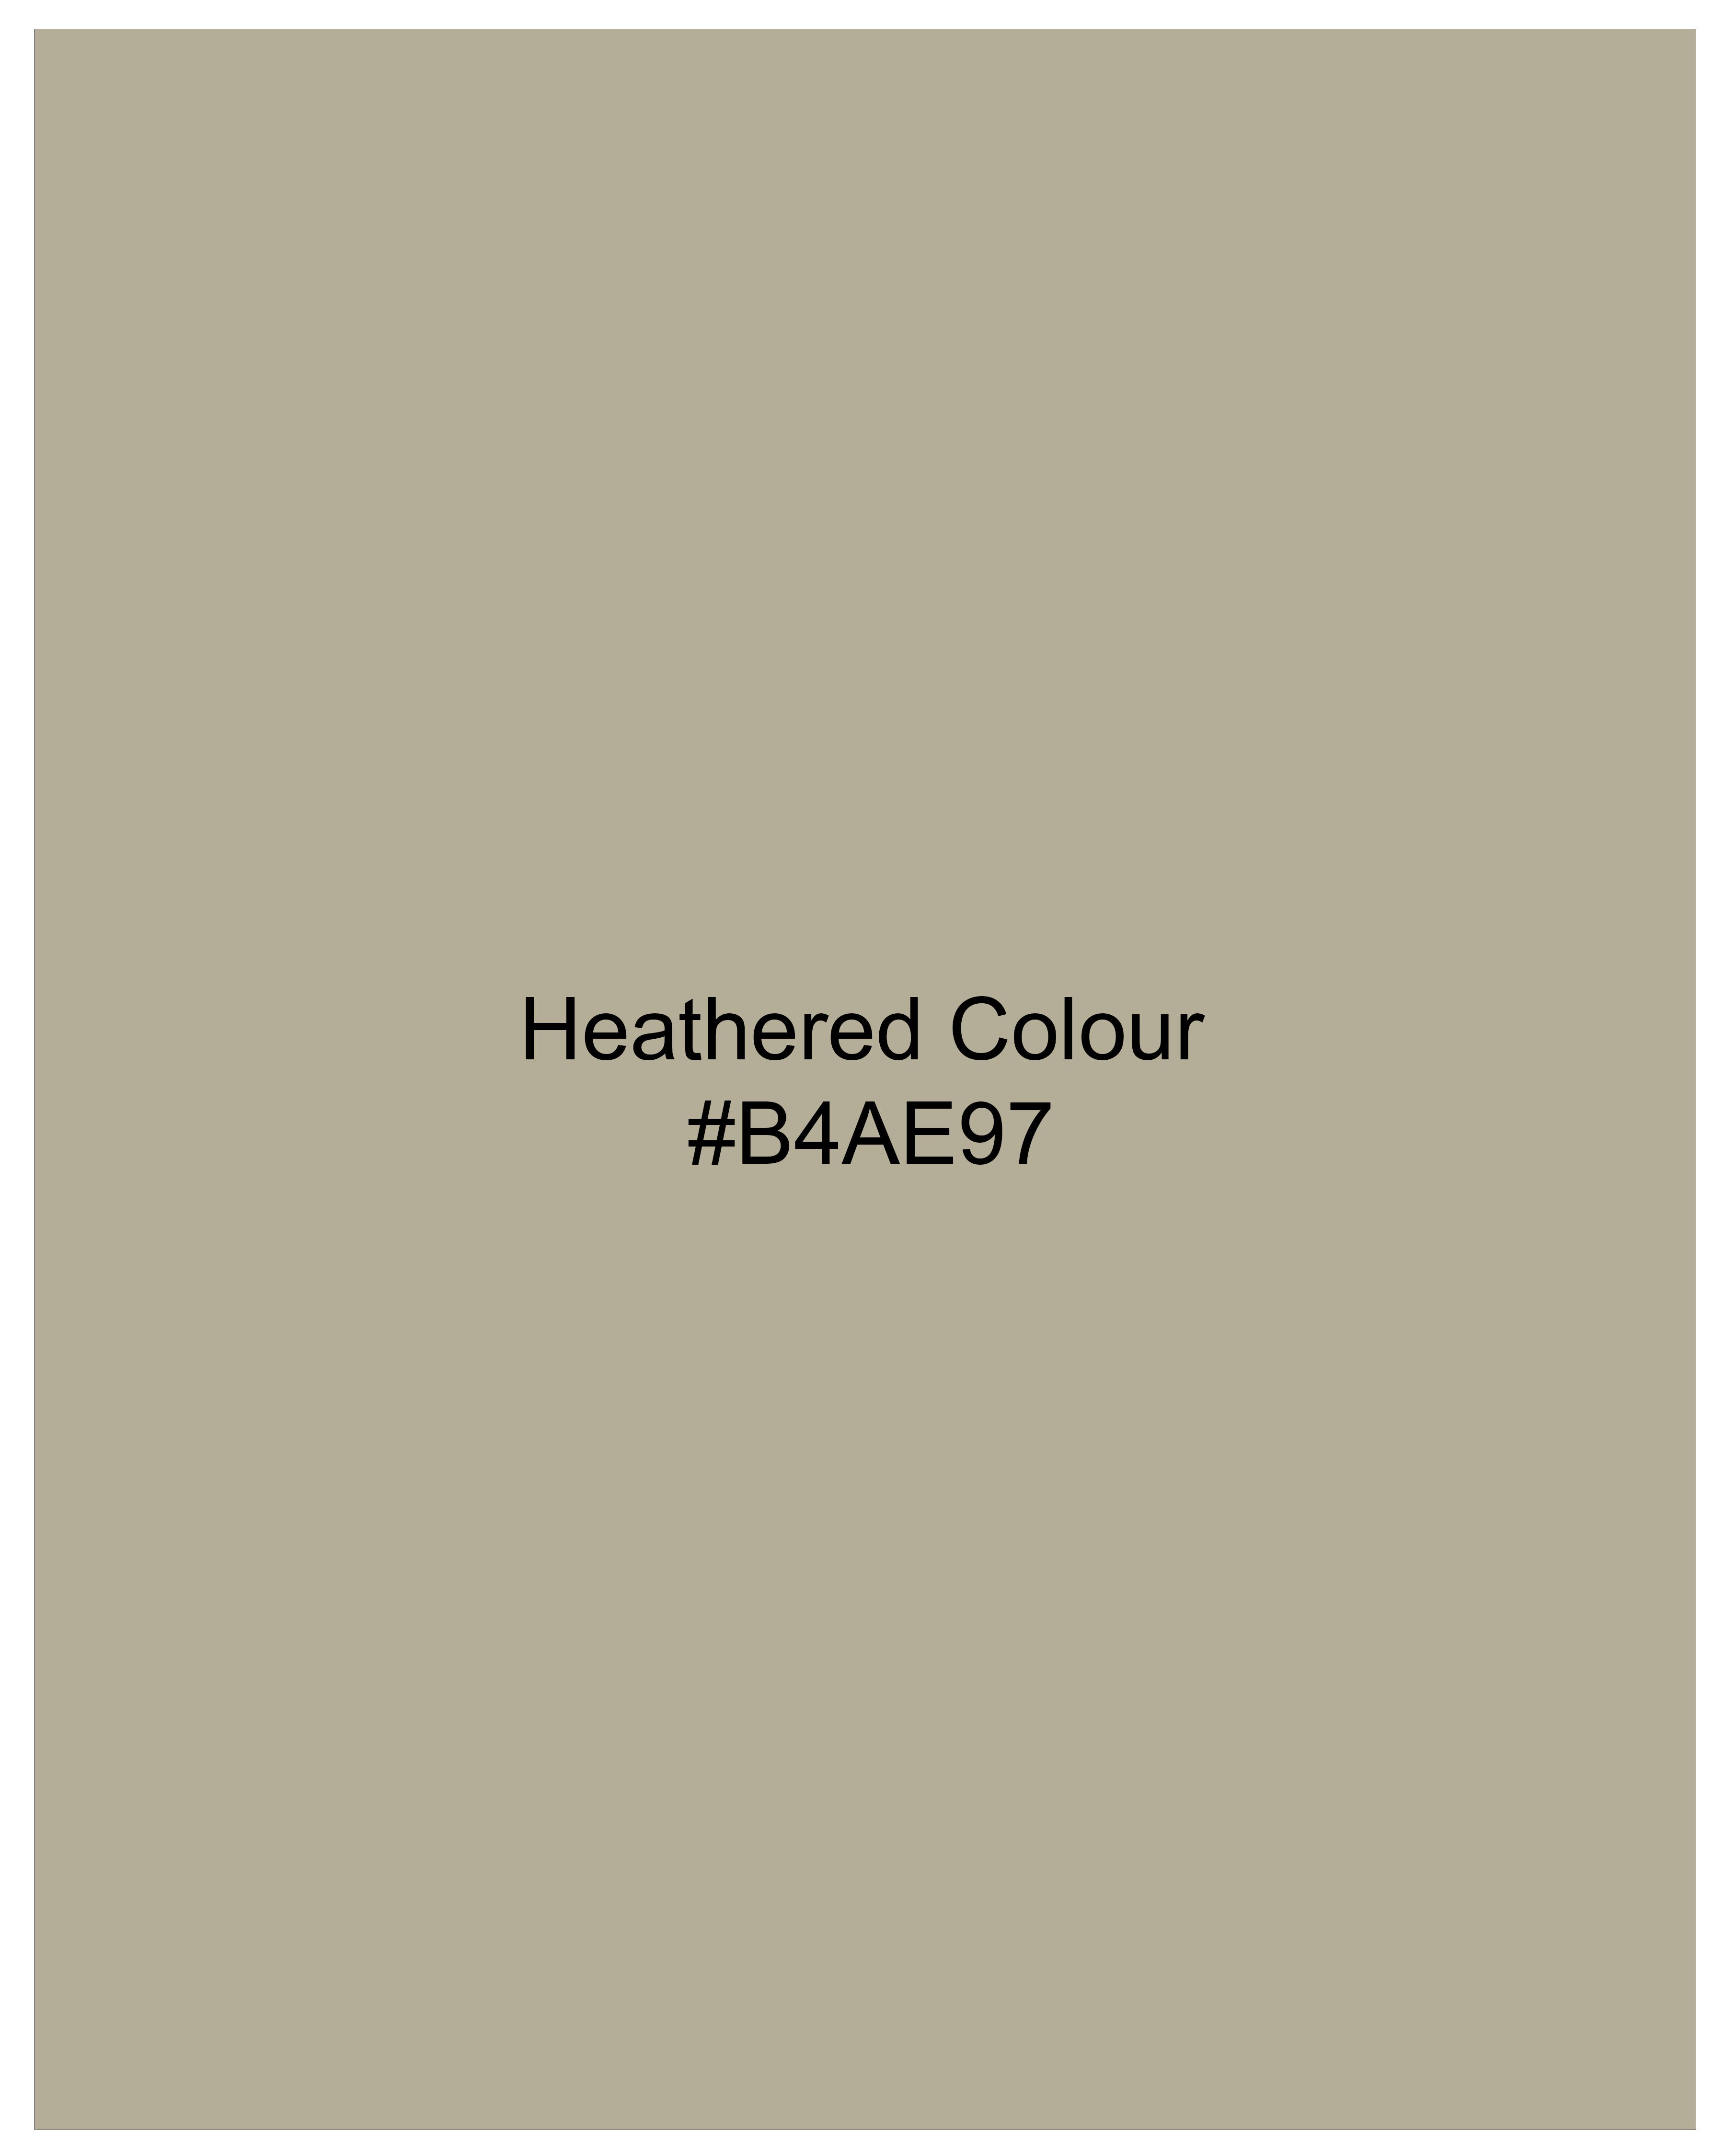 Heathered Brown Textured Super Soft Premium Cotton Shirt 9947-BLK-38, 9947-BLK-H-38, 9947-BLK-39, 9947-BLK-H-39, 9947-BLK-40, 9947-BLK-H-40, 9947-BLK-42, 9947-BLK-H-42, 9947-BLK-44, 9947-BLK-H-44, 9947-BLK-46, 9947-BLK-H-46, 9947-BLK-48, 9947-BLK-H-48, 9947-BLK-50, 9947-BLK-H-50, 9947-BLK-52, 9947-BLK-H-52